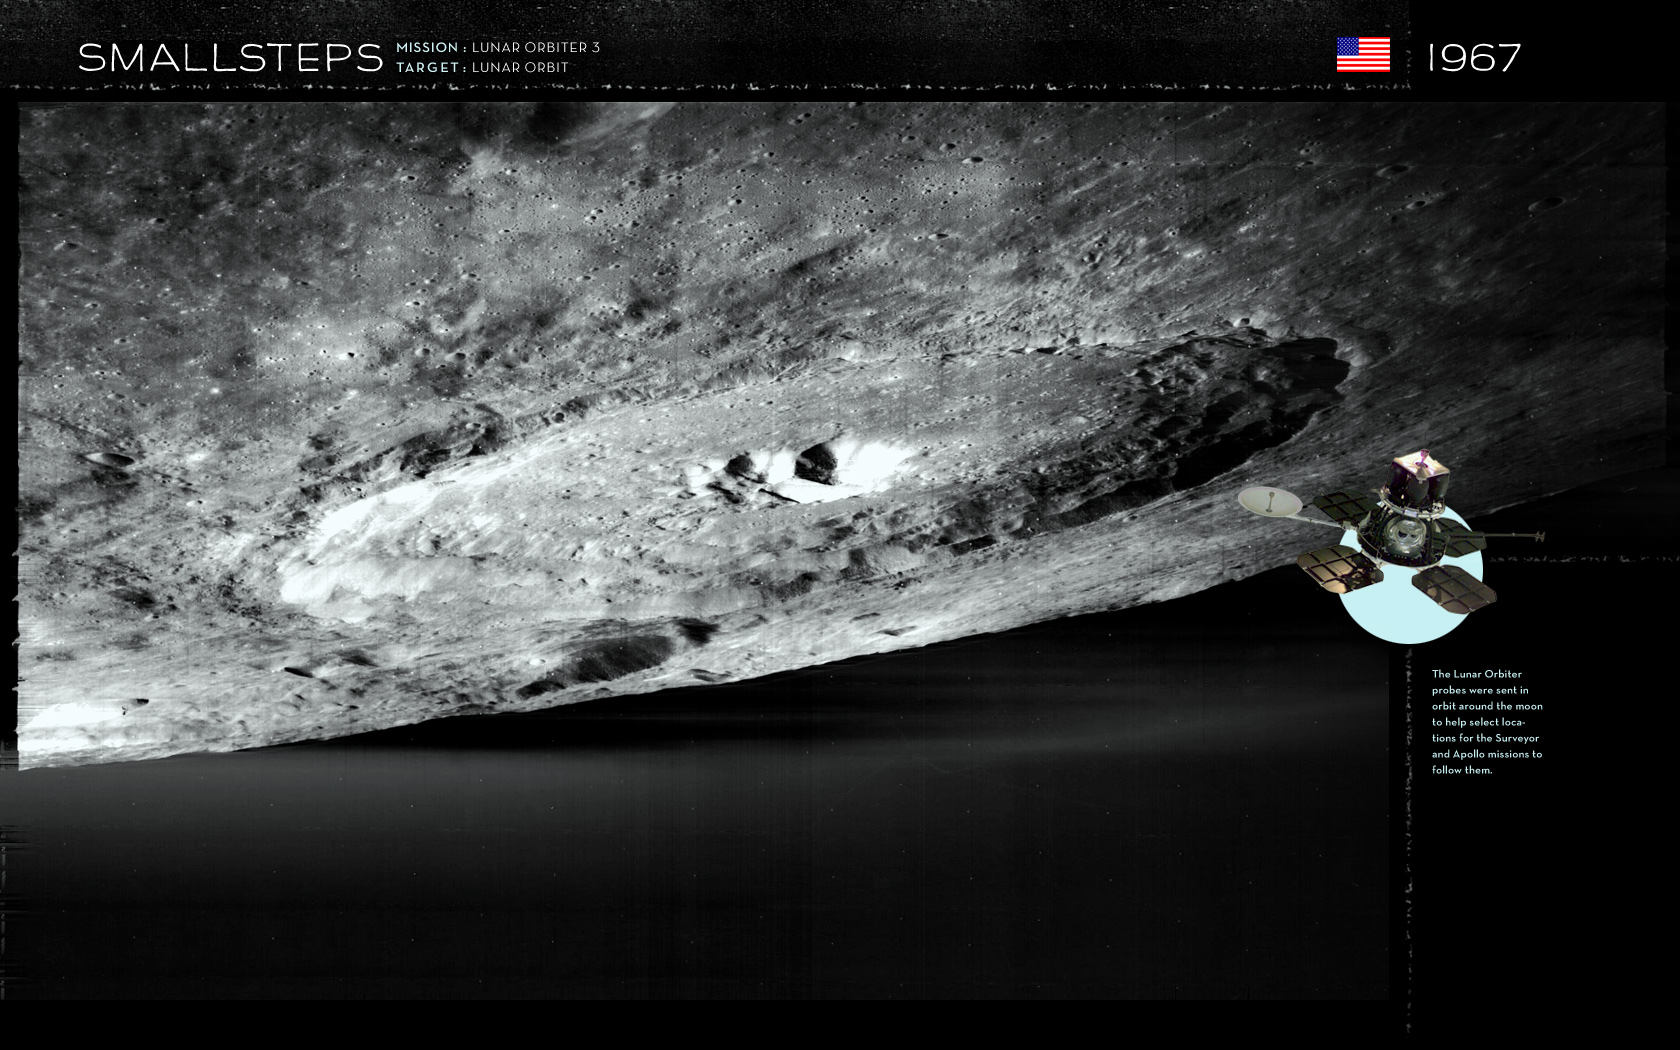 smallsteps-lunar-orbiter3.jpg